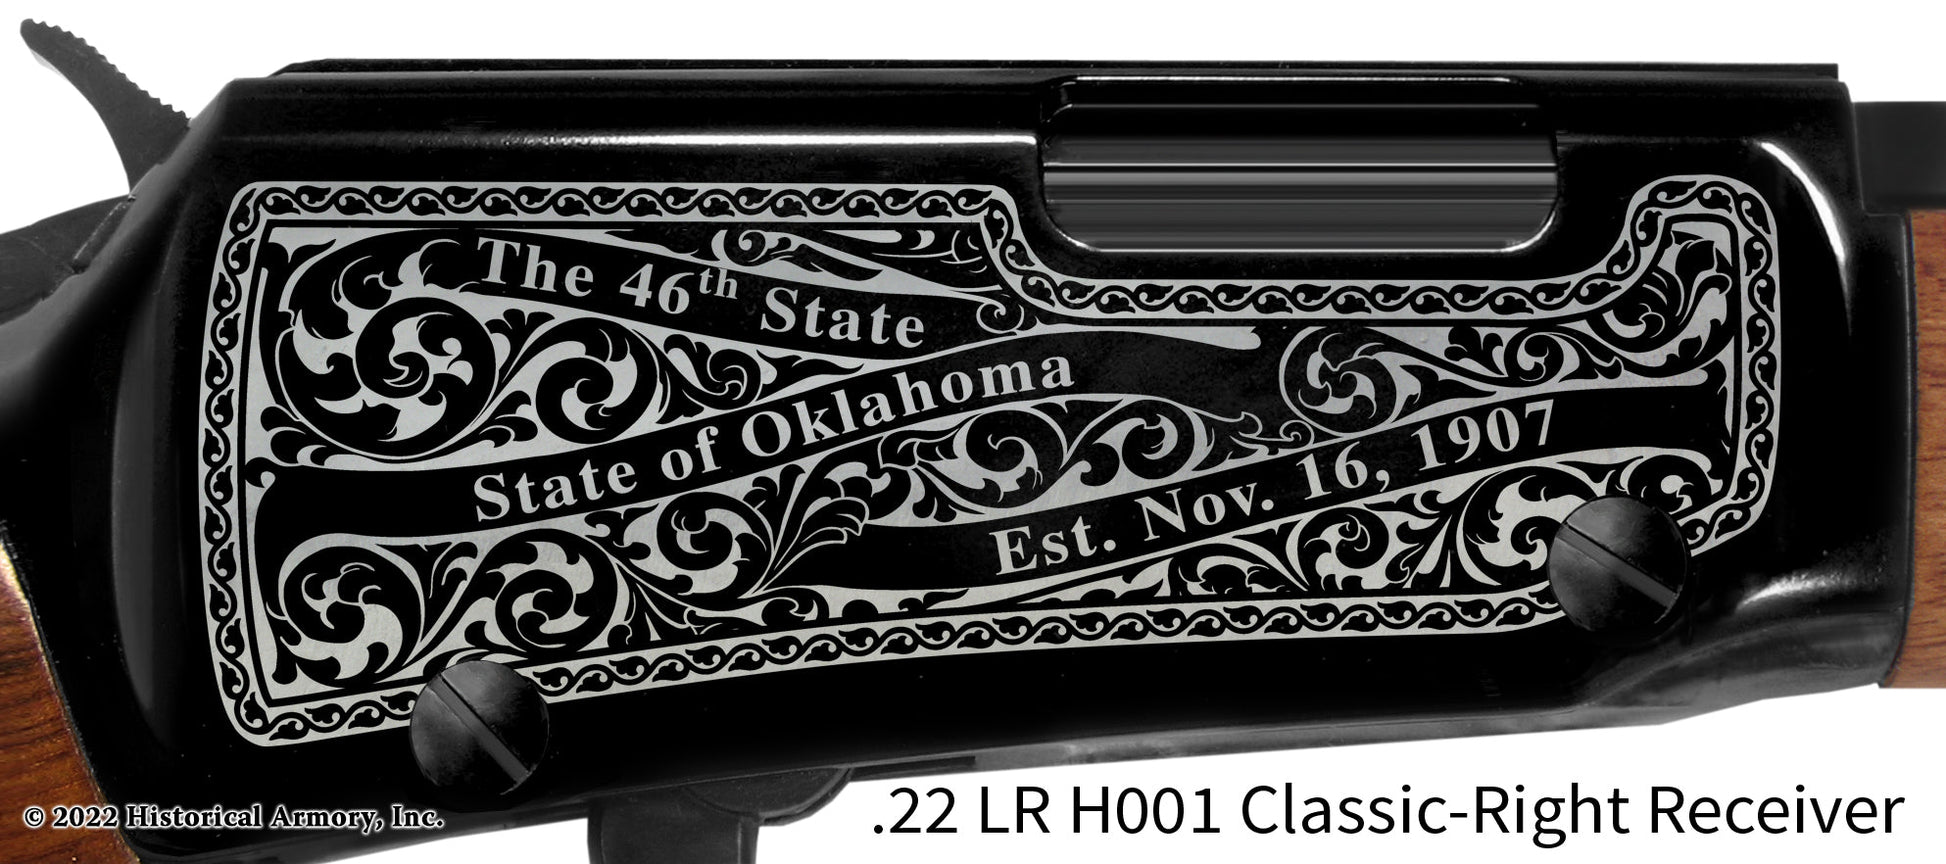 Pushmataha County Oklahoma Engraved Henry H001 Rifle